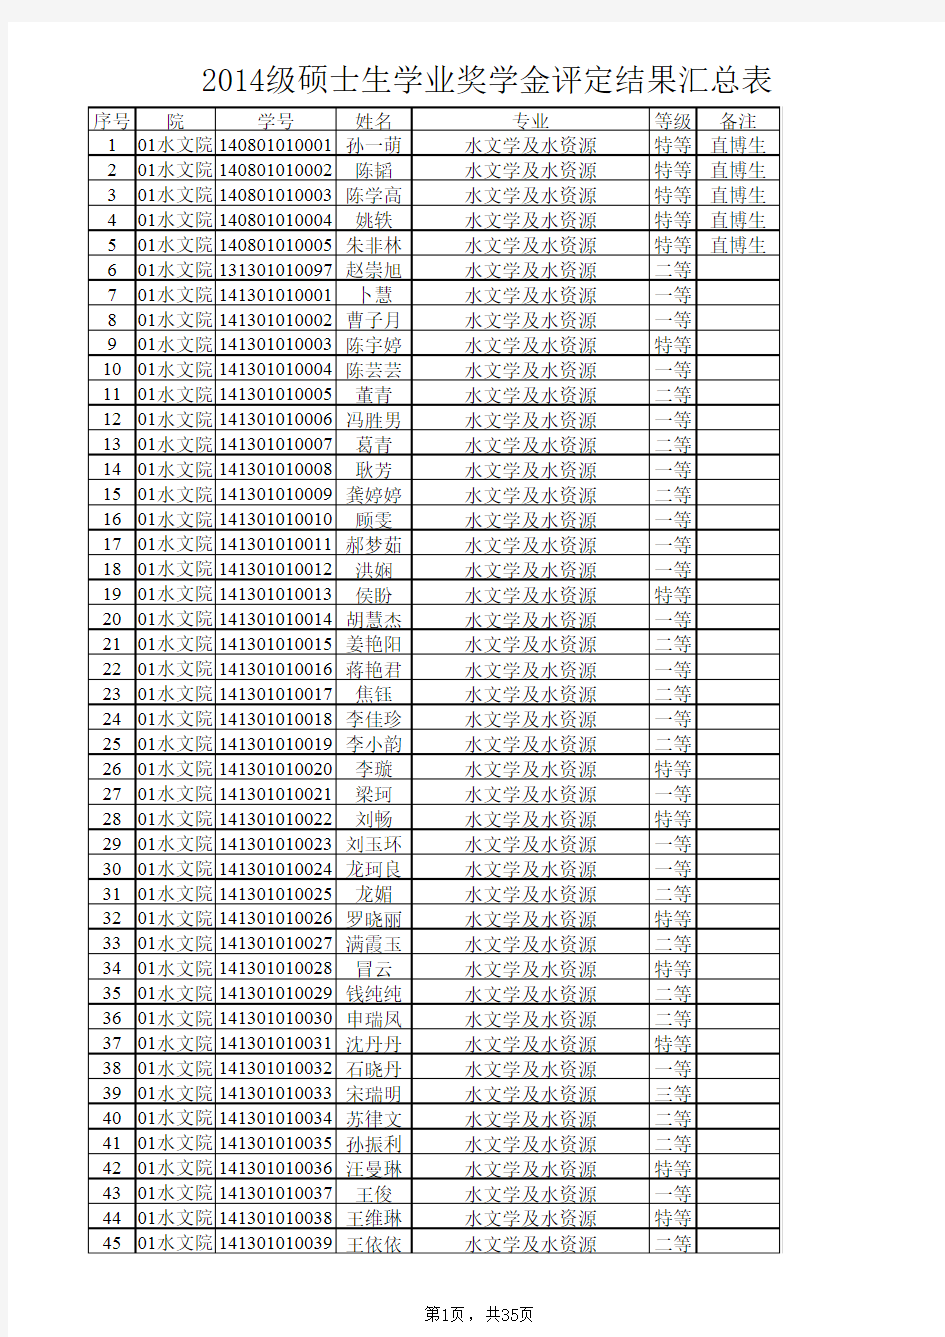 河海大学2014级硕士生学业奖学金公示名单